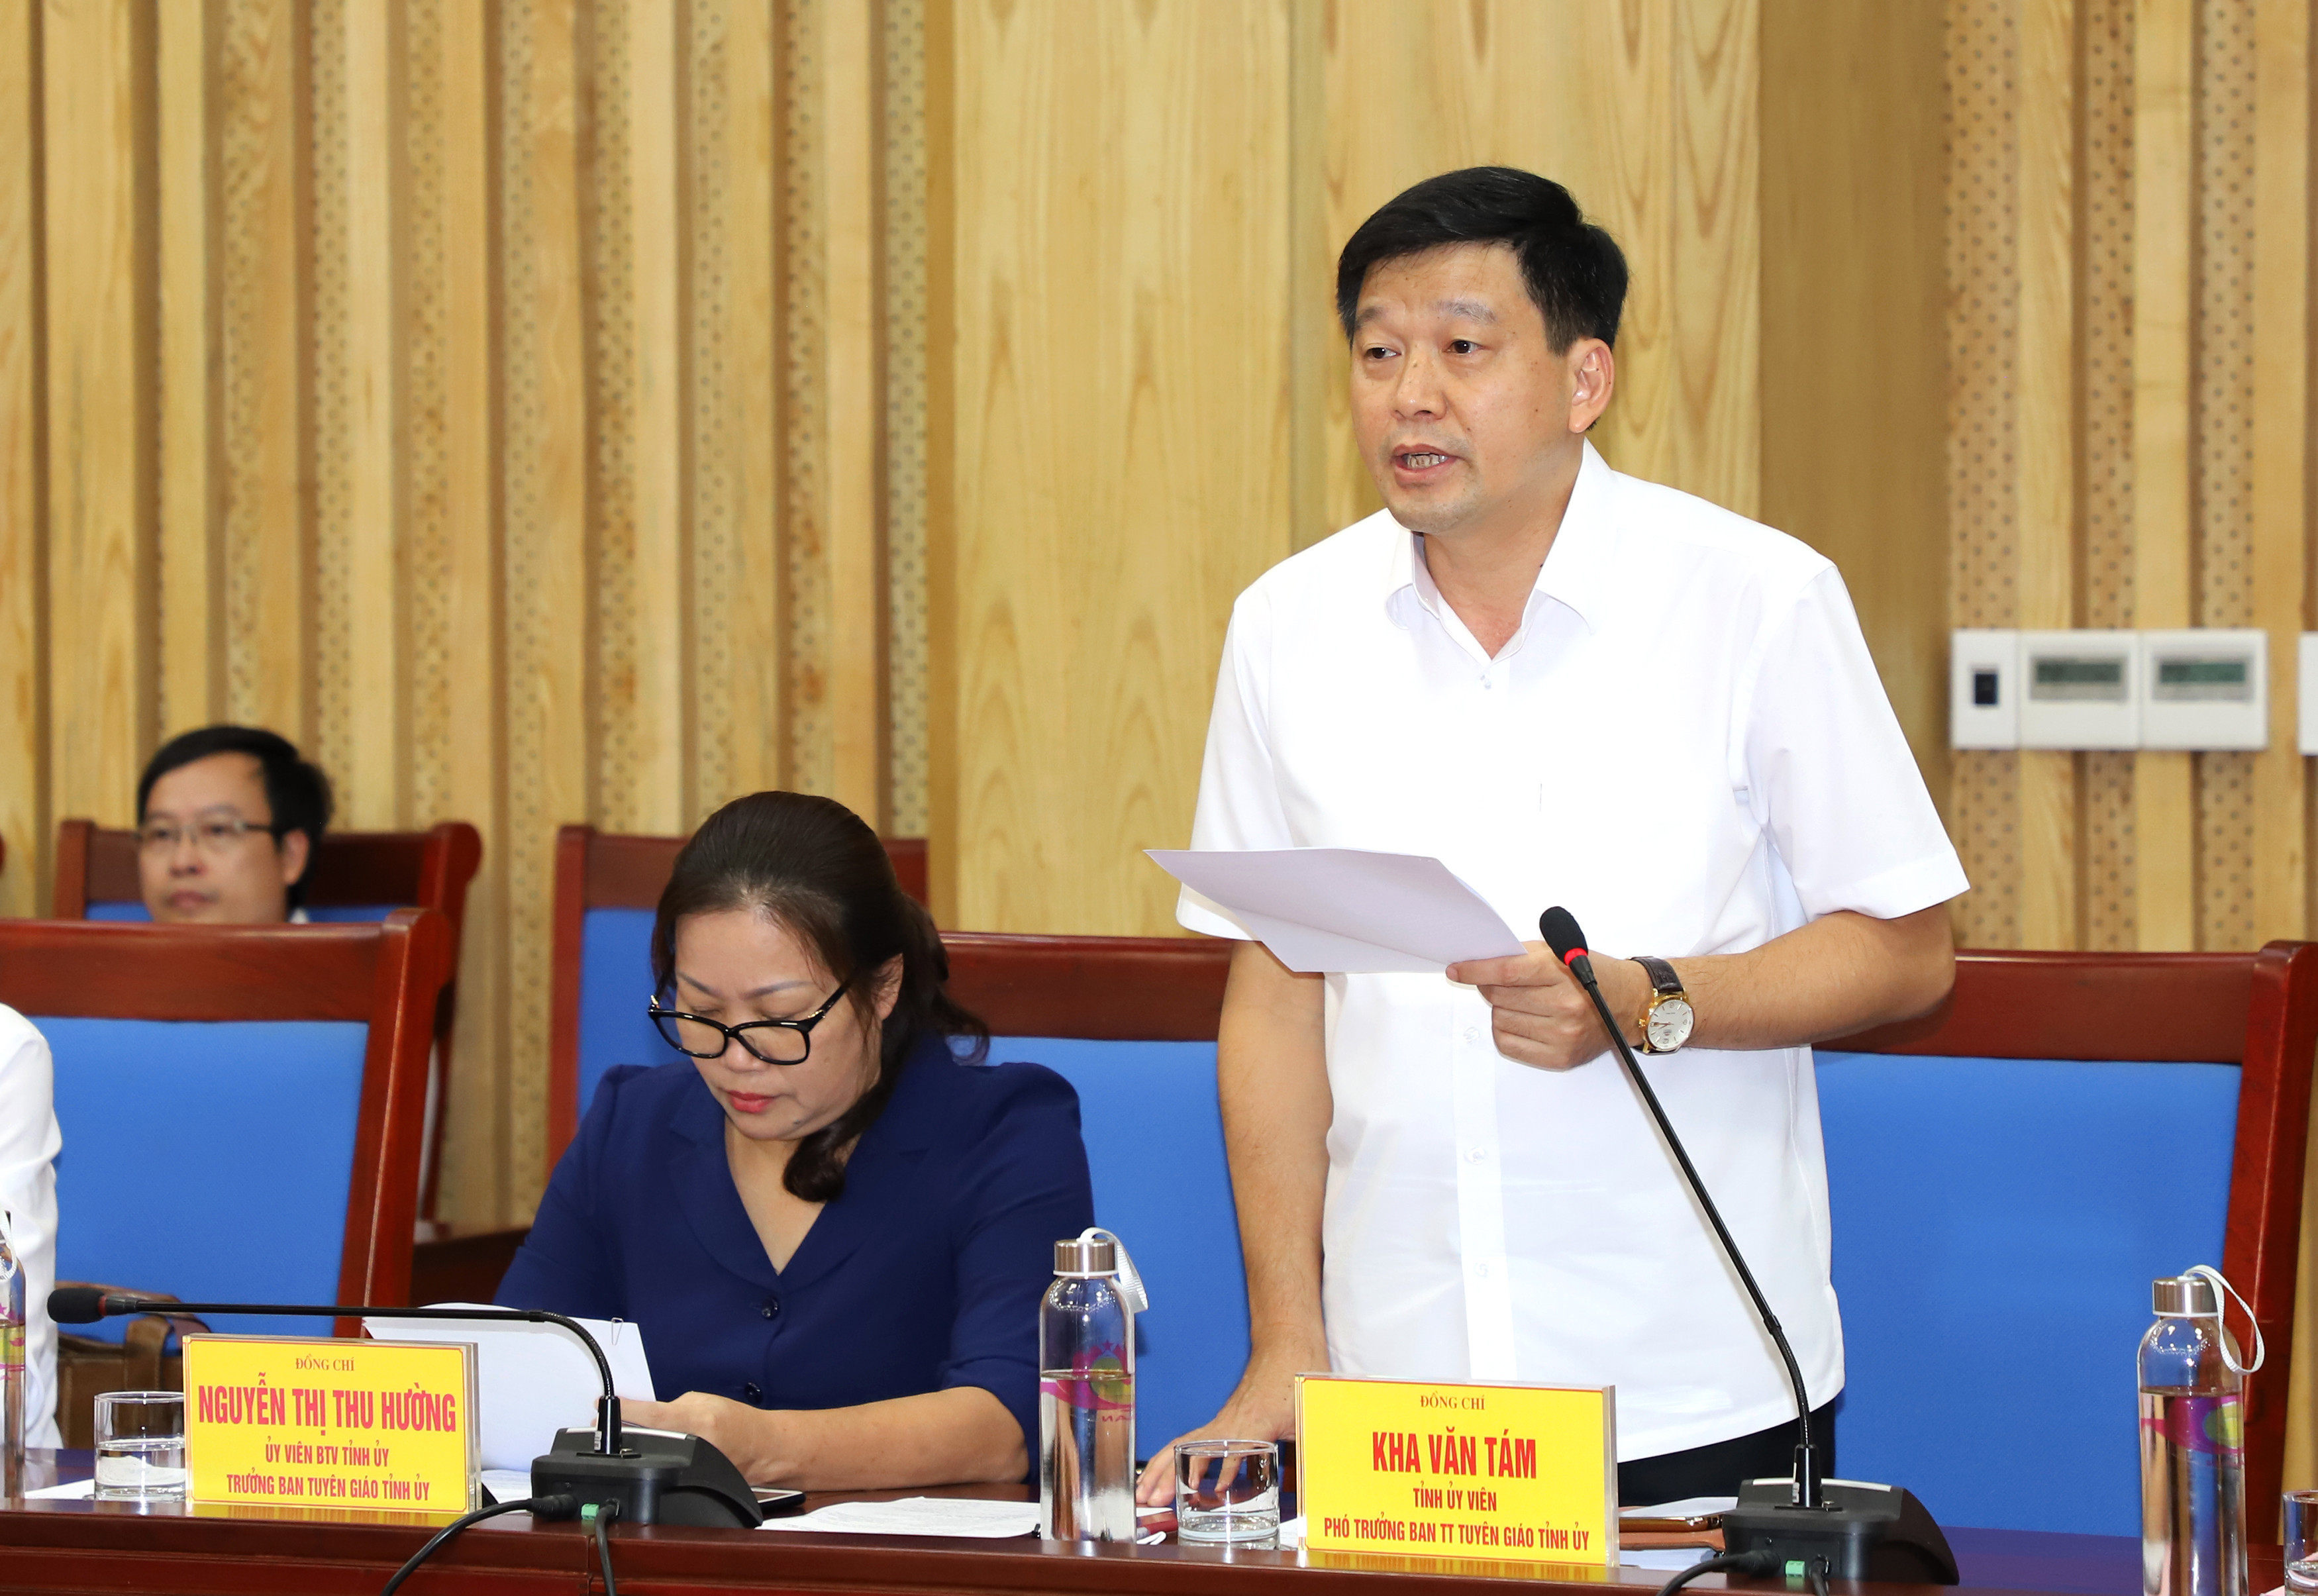 Đồng chí Kha Văn Tám - Phó trưởng Ban Tuyên giáo Tỉnh ủy trình bày những kết quả phối hợp công tác giữa 2 cơ quan trong năm 2019. Ảnh: Phạm Bằng